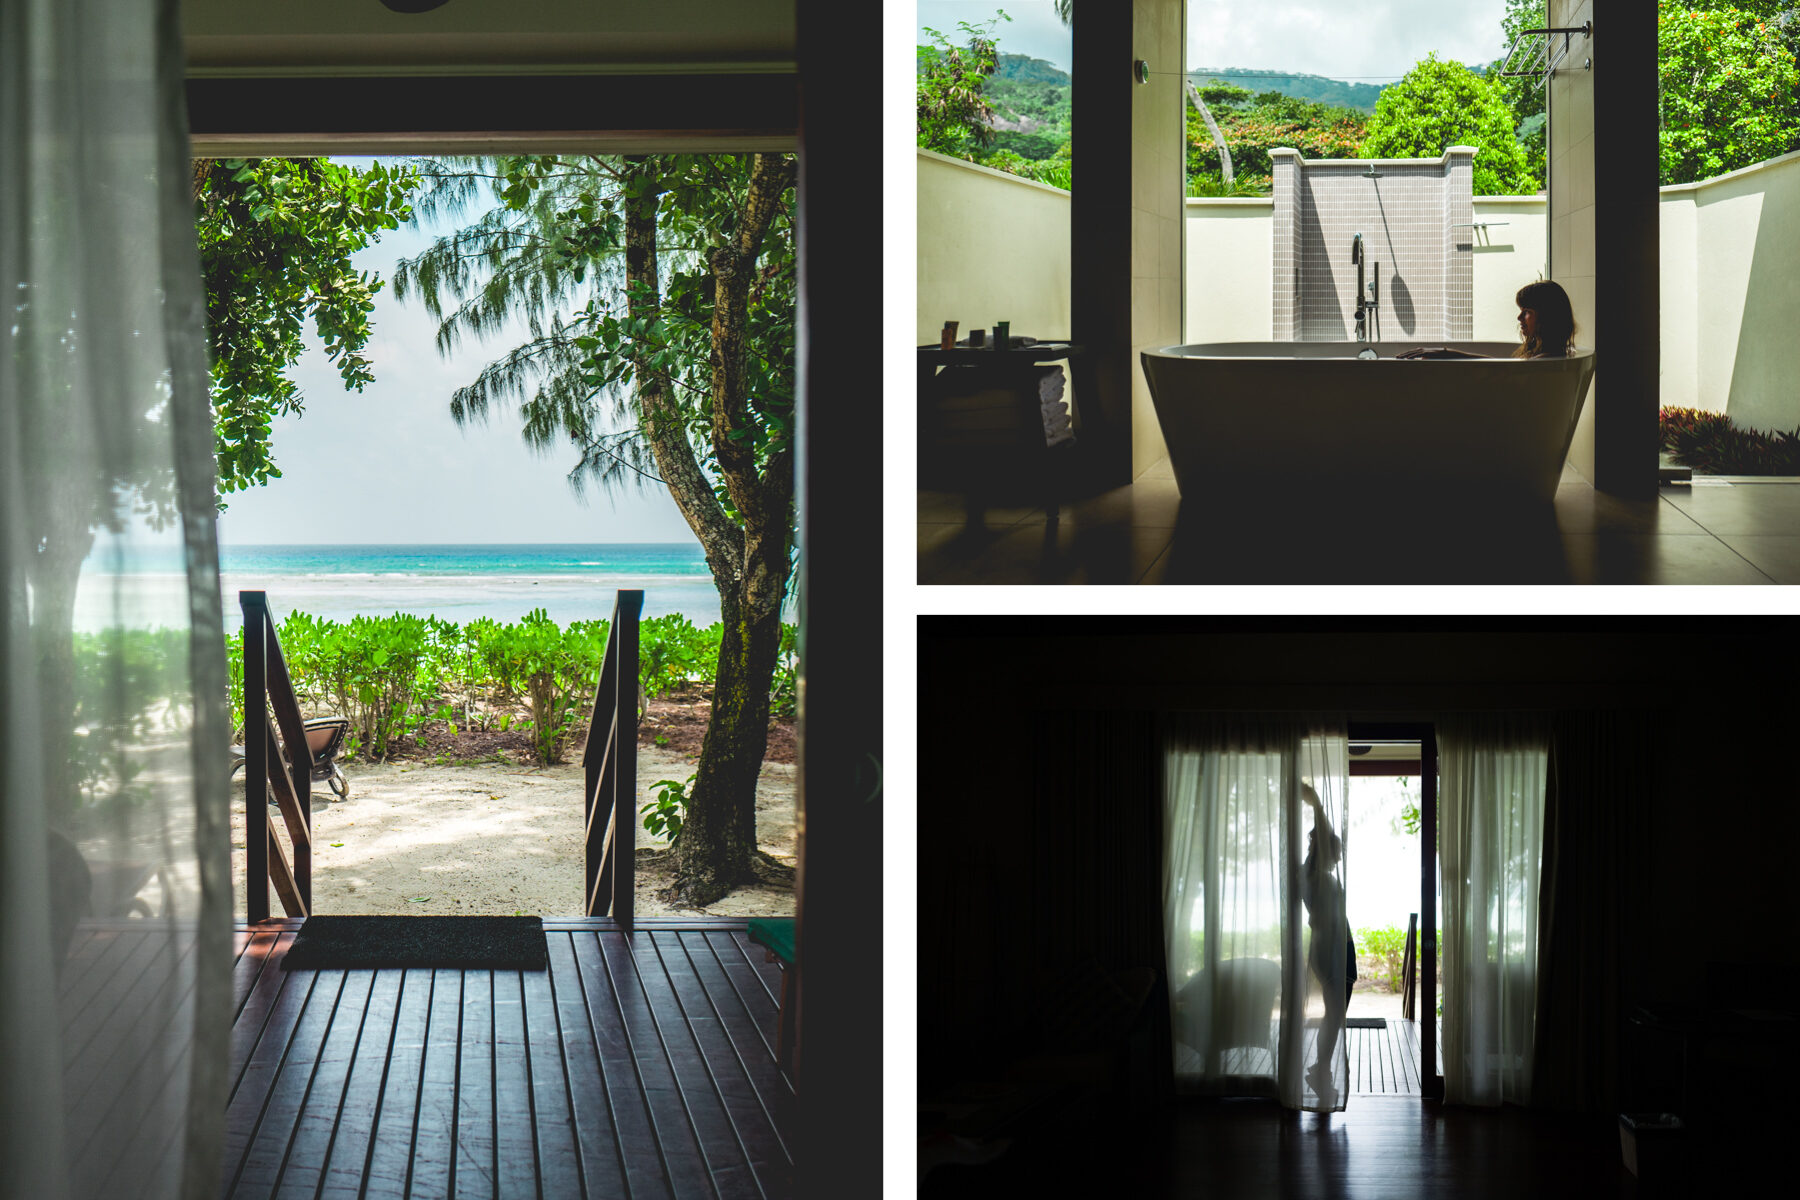 freiseindesign-outdoorblog-seychellen-direktflug-collage-41-8772650